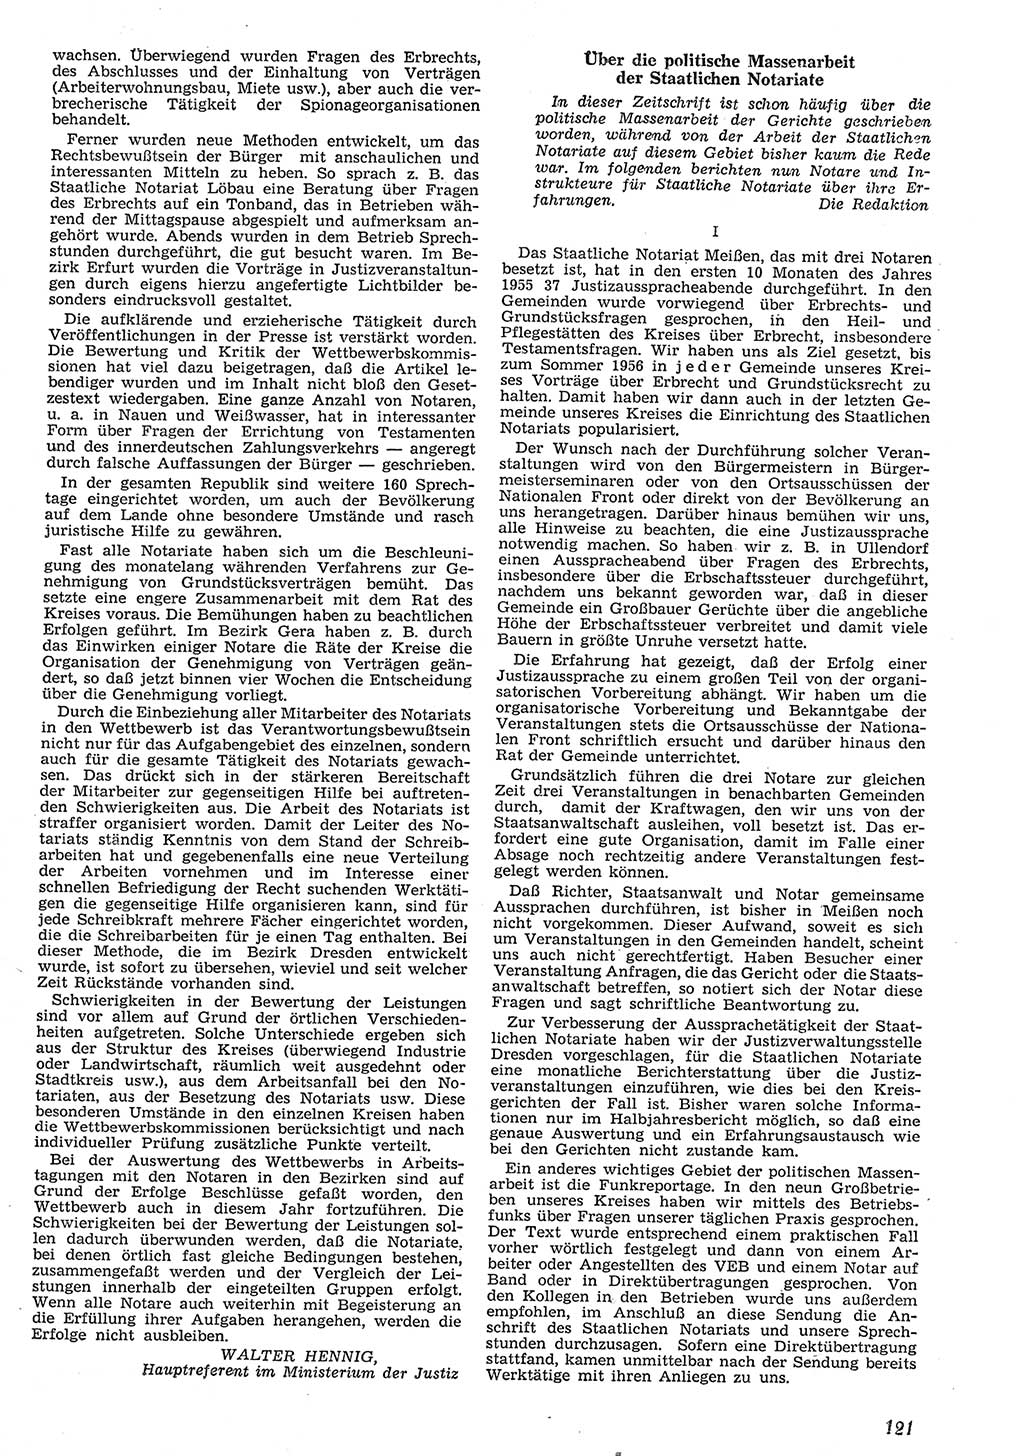 Neue Justiz (NJ), Zeitschrift für Recht und Rechtswissenschaft [Deutsche Demokratische Republik (DDR)], 10. Jahrgang 1956, Seite 121 (NJ DDR 1956, S. 121)